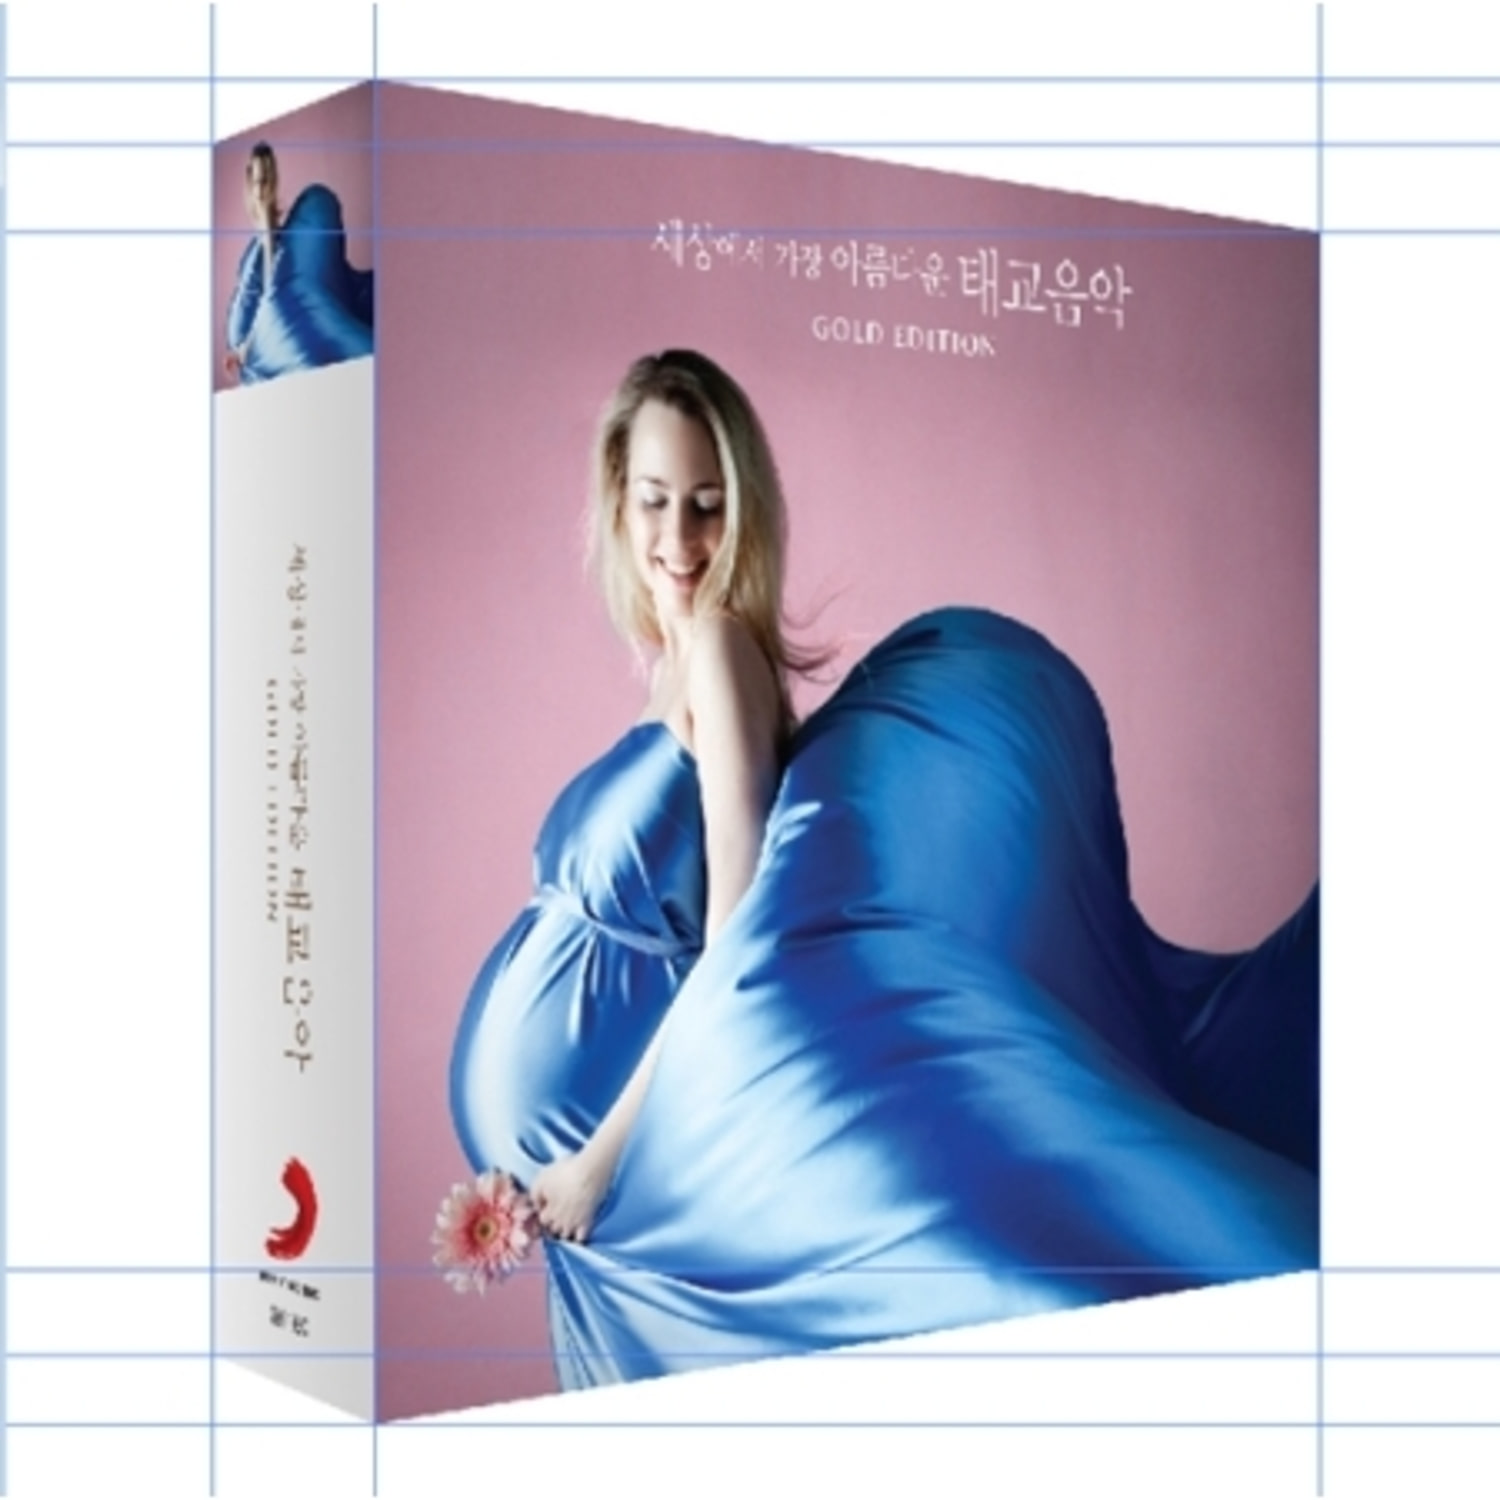 세상에서 가장 아름다운 태교음악 Gold Edition [The Most Beautiful Melodies For Prenatal Care] [3CD]